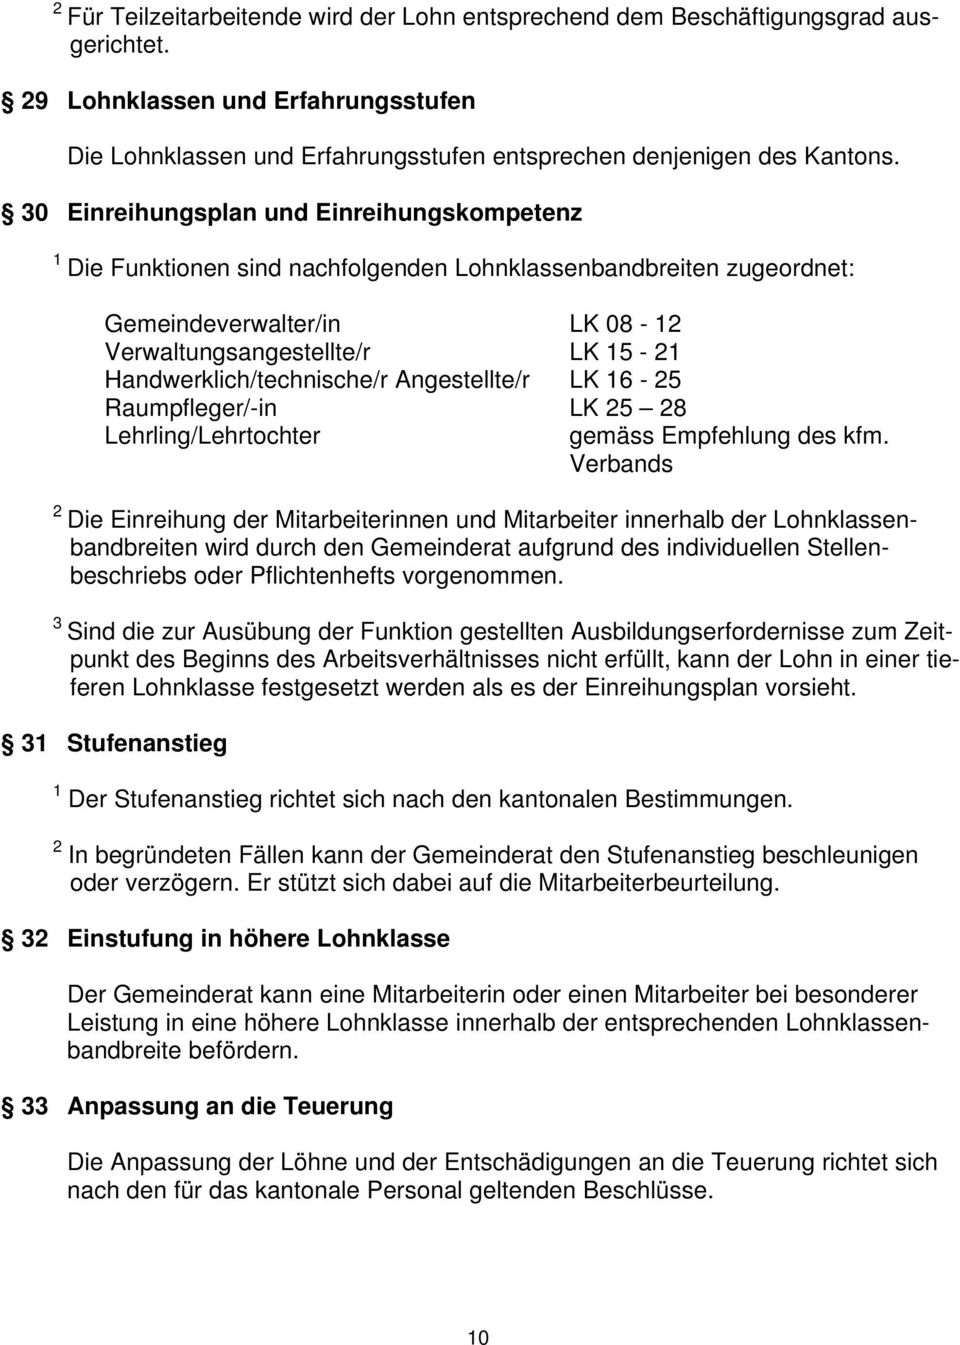 Handwerklich/technische/r Angestellte/r LK 16-25 Raumpfleger/-in LK 25 28 Lehrling/Lehrtochter gemäss Empfehlung des kfm.